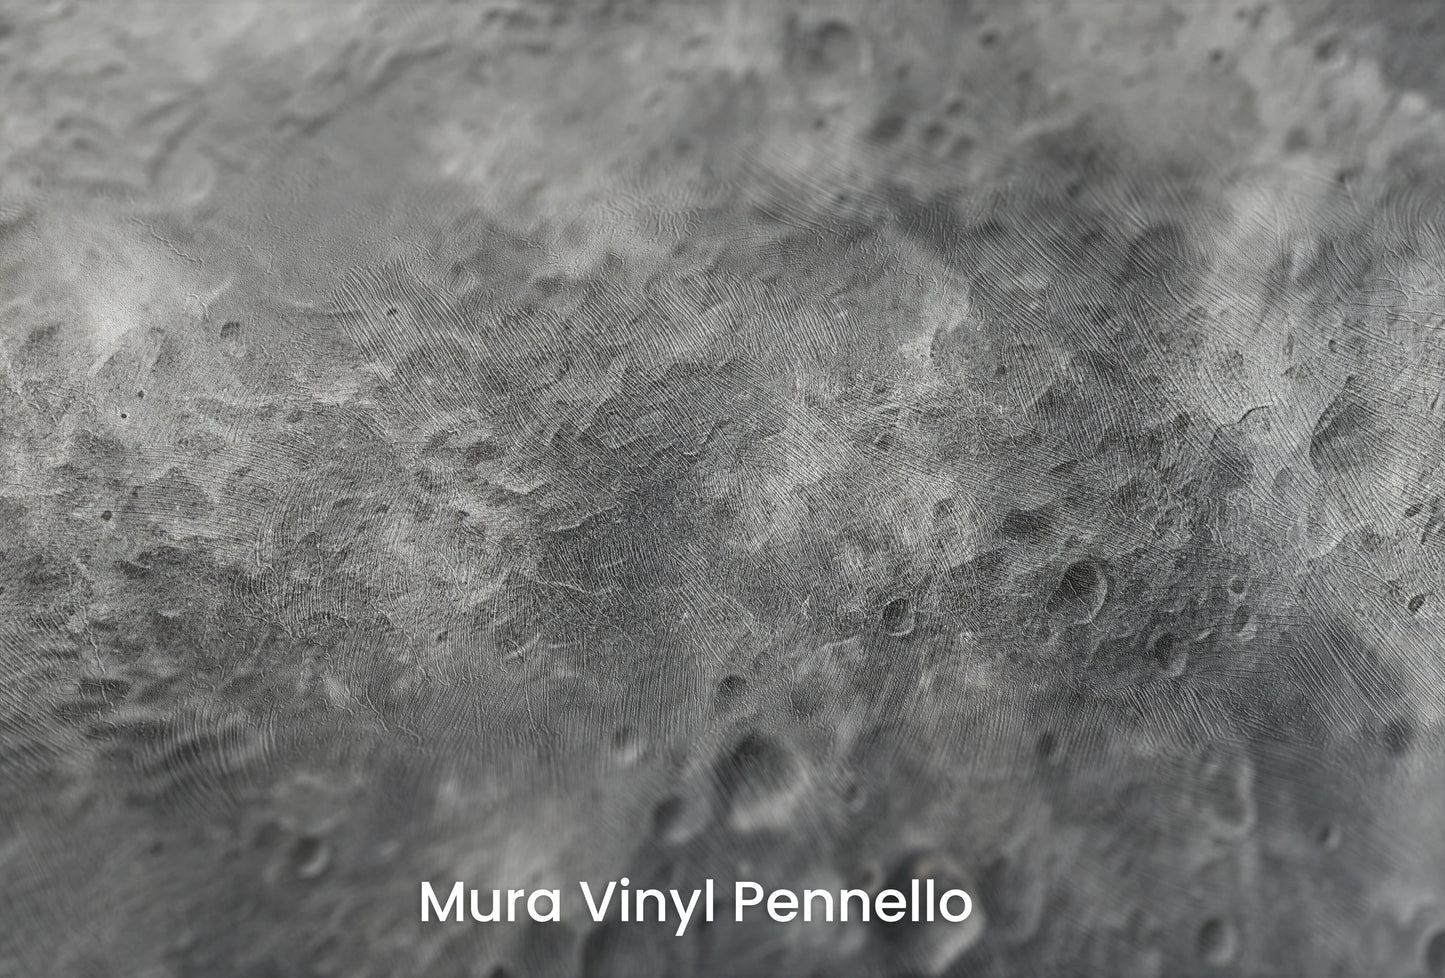 Zbliżenie na artystyczną fototapetę o nazwie Mercury's Texture na podłożu Mura Vinyl Pennello - faktura pociągnięć pędzla malarskiego.